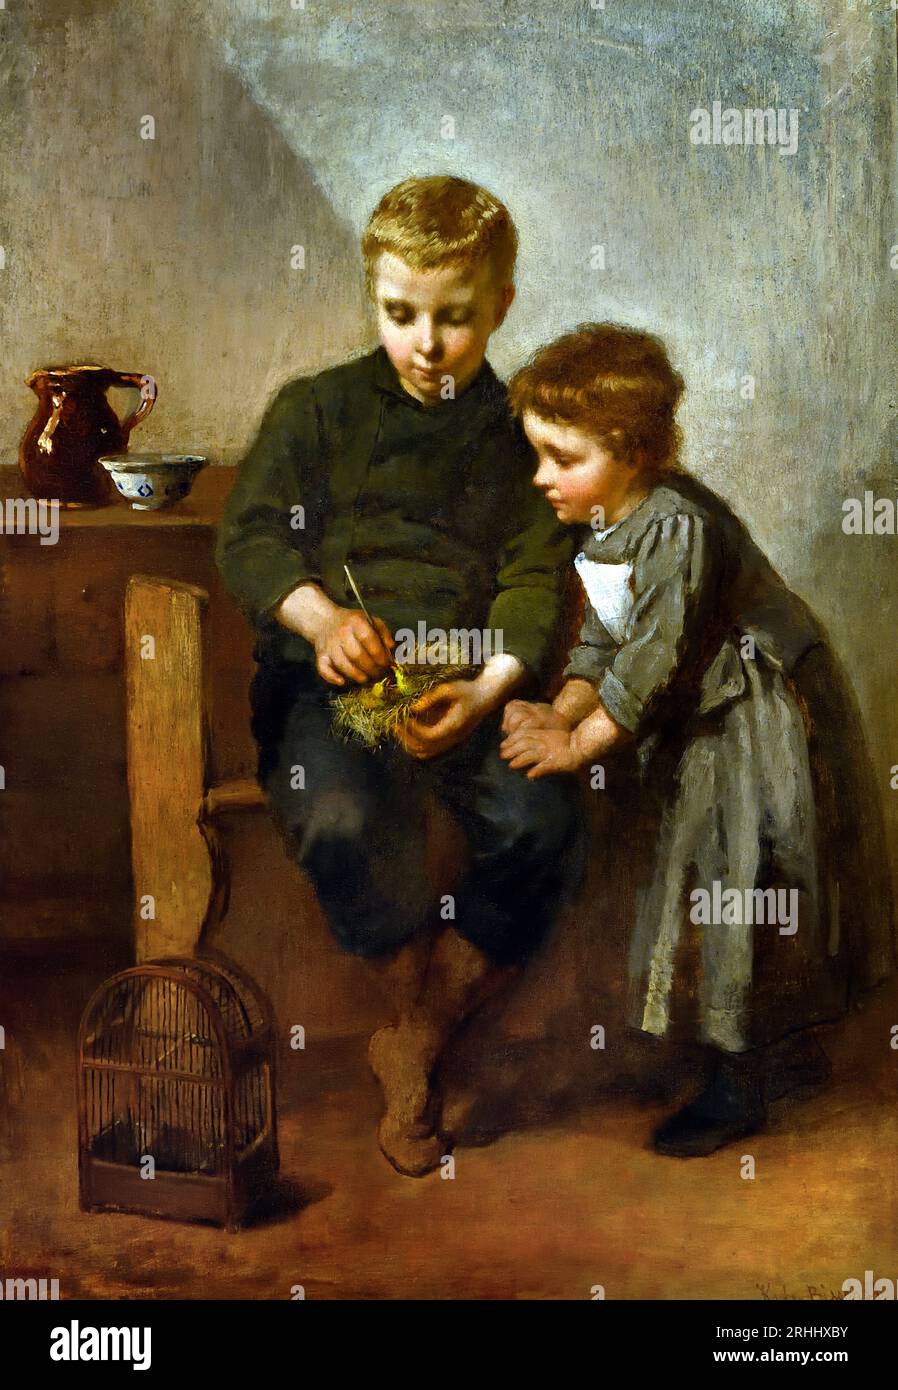 Frère et sœur de Christoffel Bisschop (1828-1904) artiste frison (épouse anglaise Kate Bisschop-Swift) (1834-1928). Néerlandais, pays-Bas, , Banque D'Images